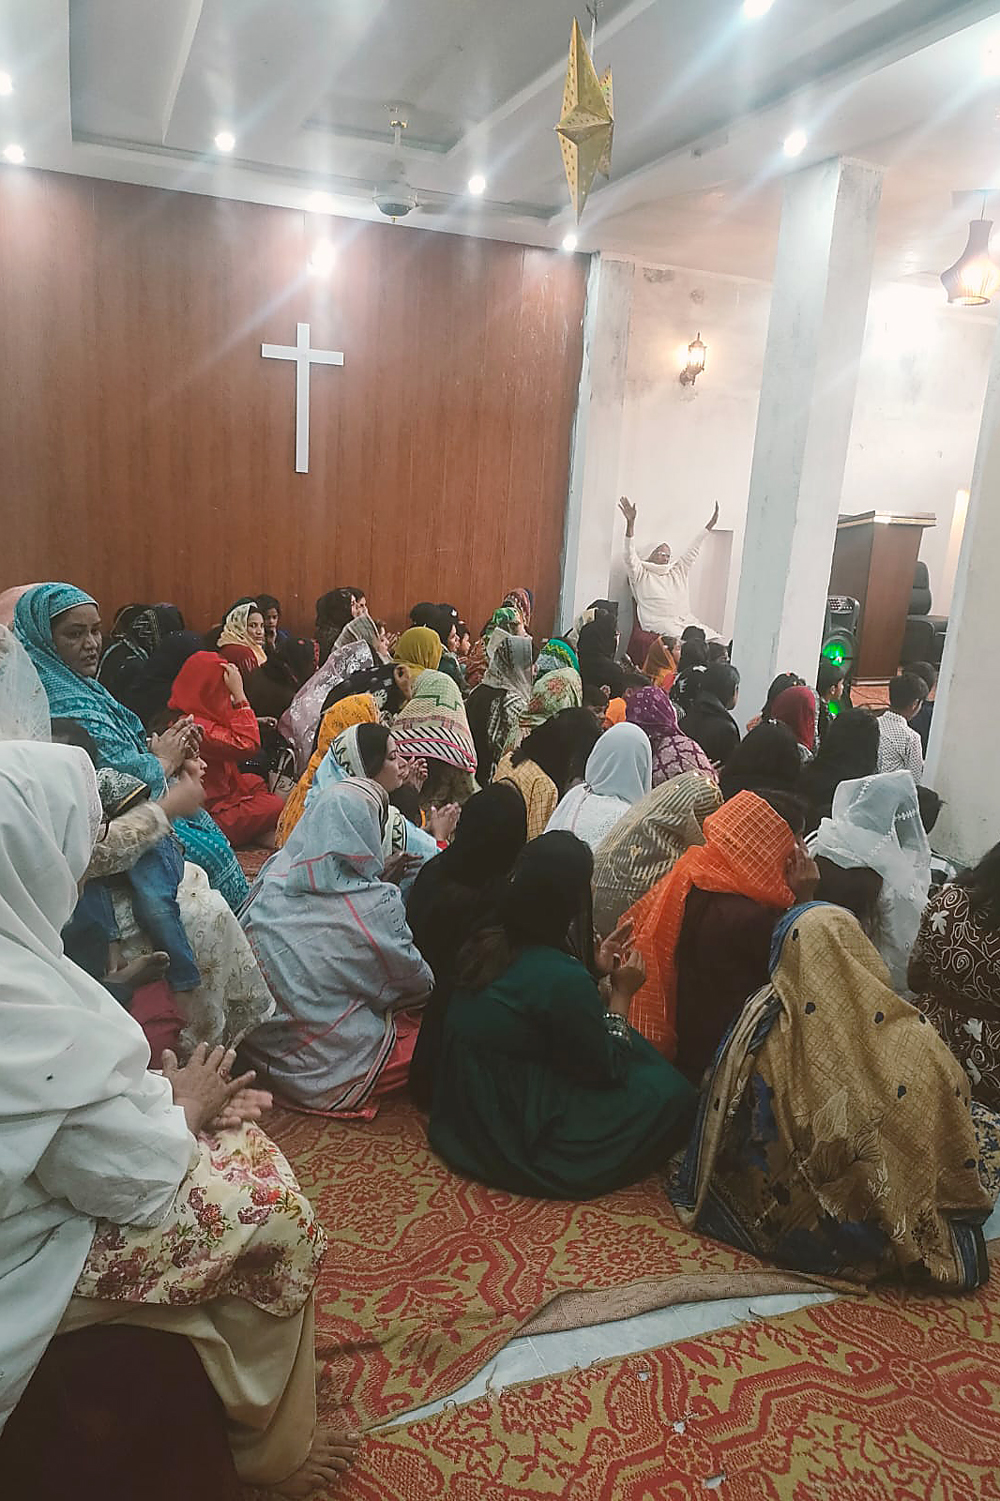 Traditionell gekleidete christliche Pakistani sitzen auf einem Teppich am Boden.